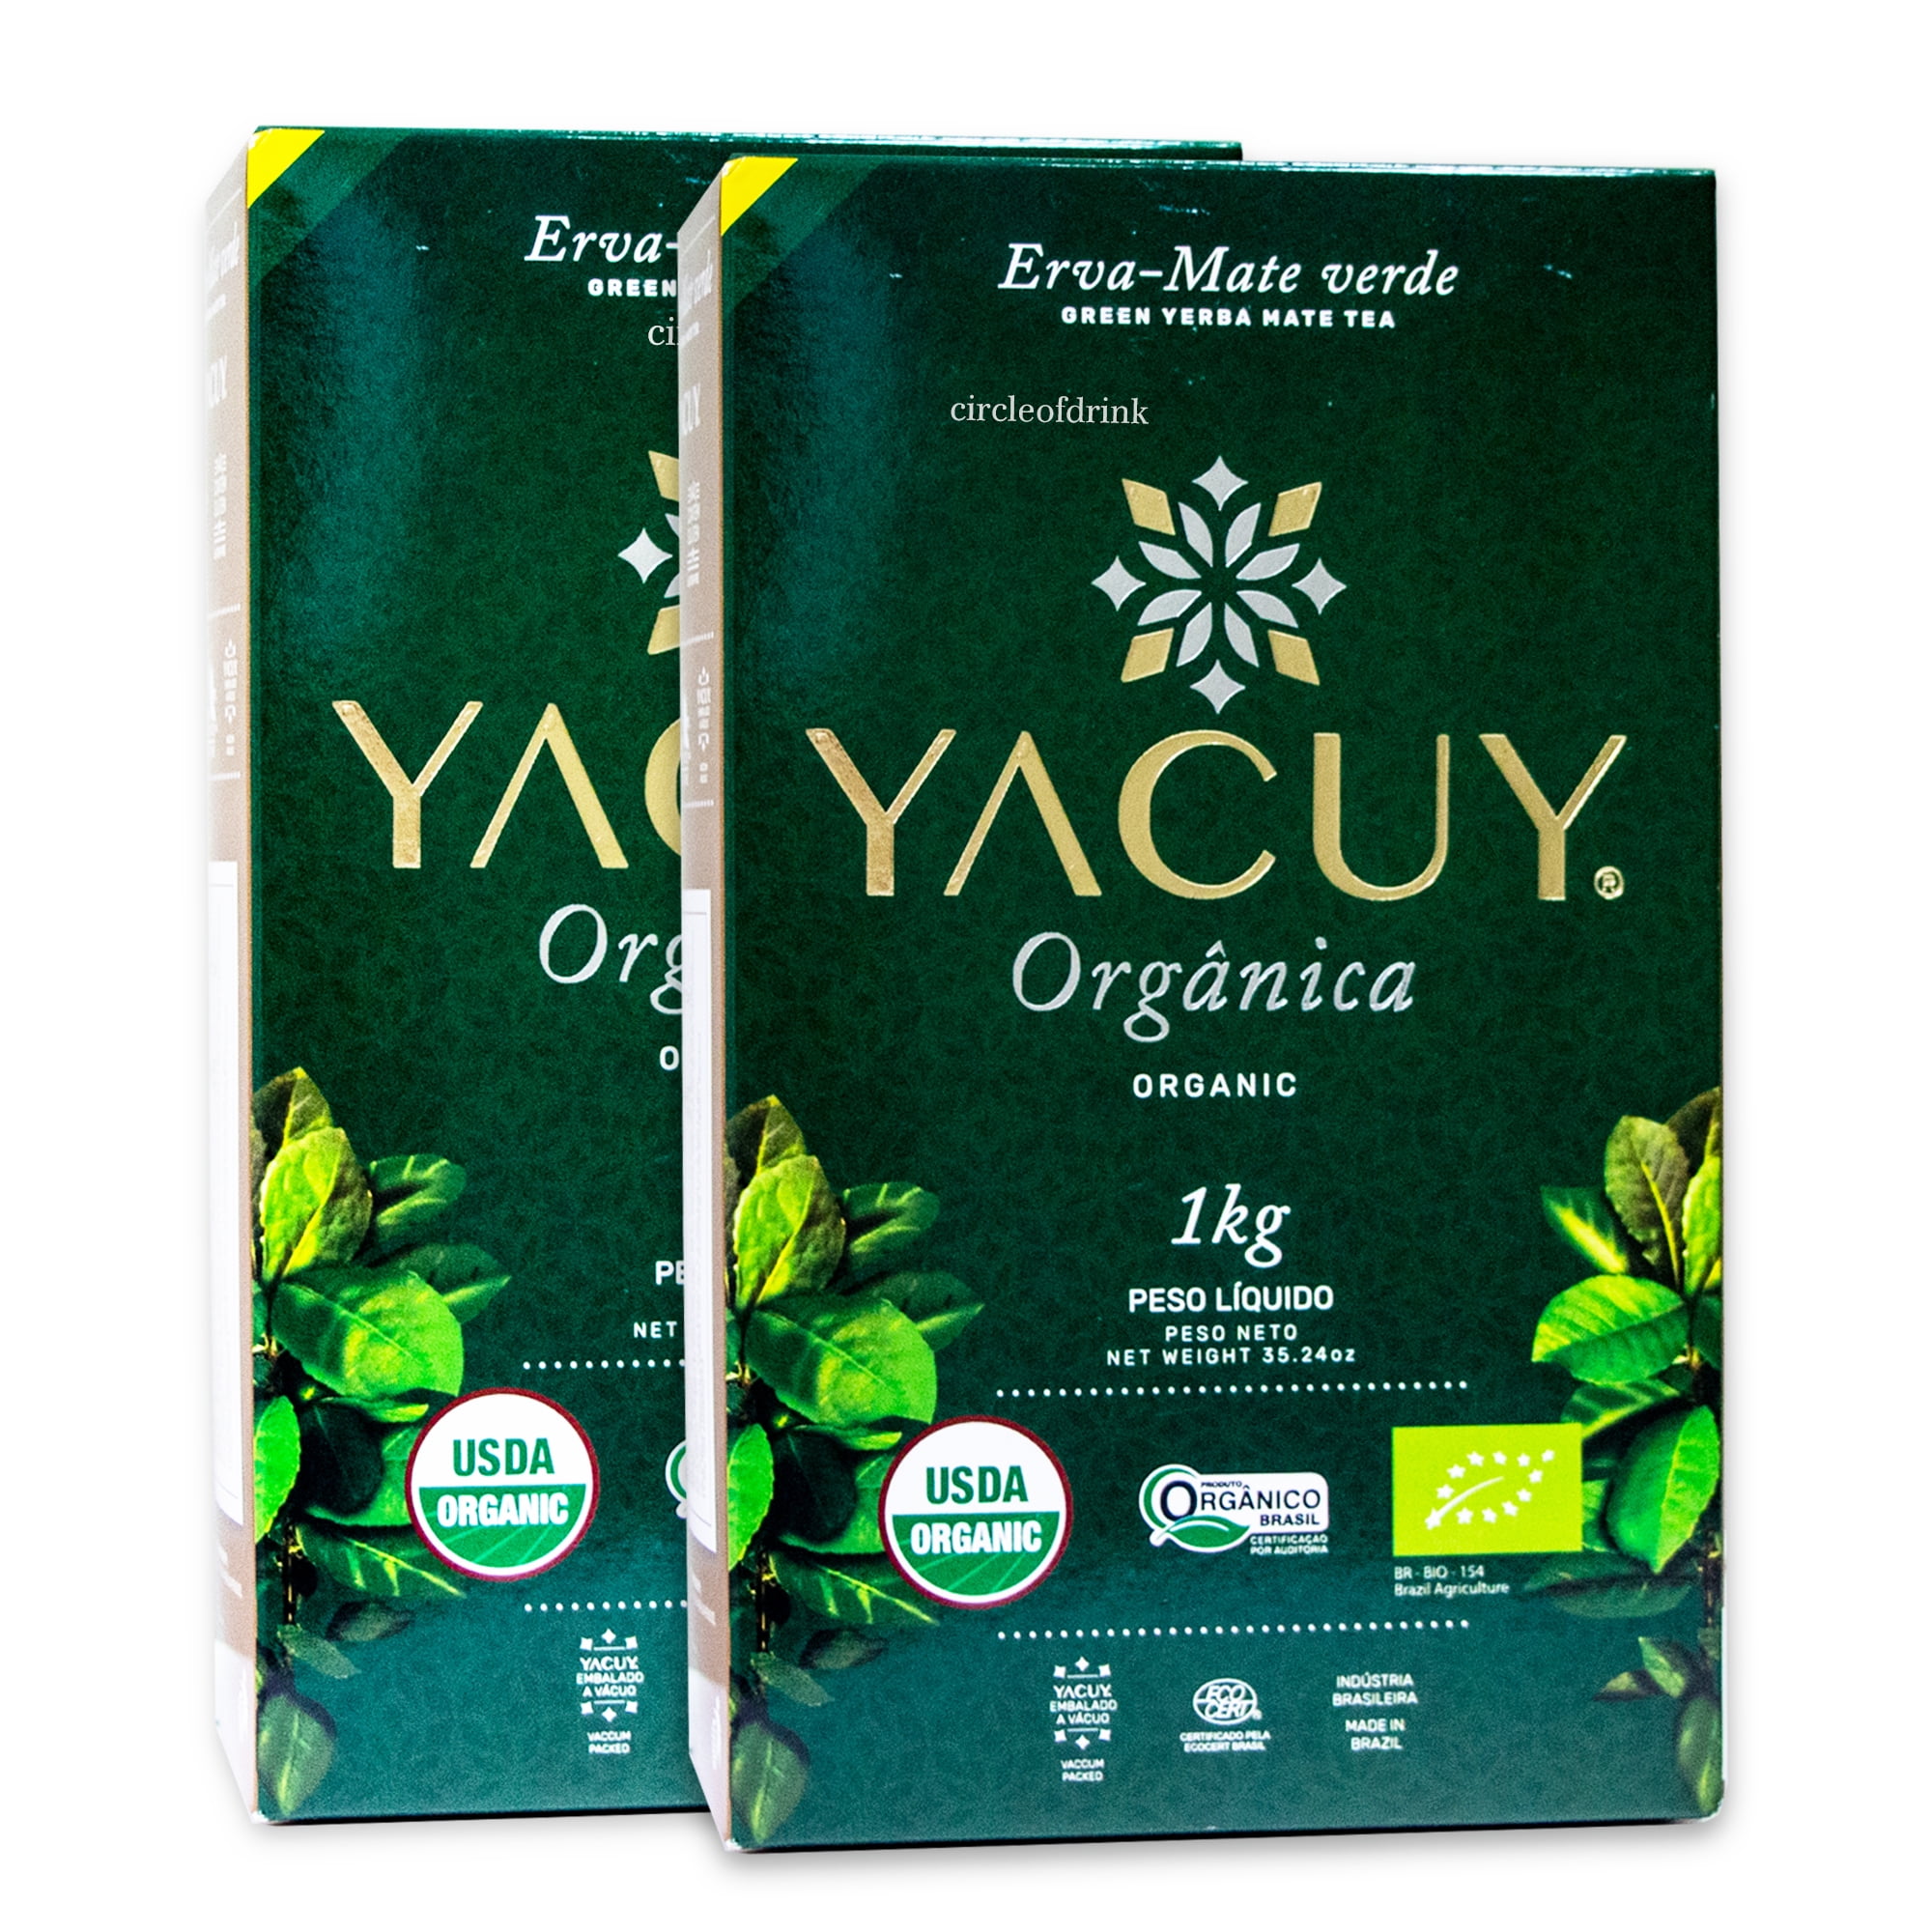 Yacuy Certified Organic Green Yerba Mate Tea - Gourmet Erva Mate